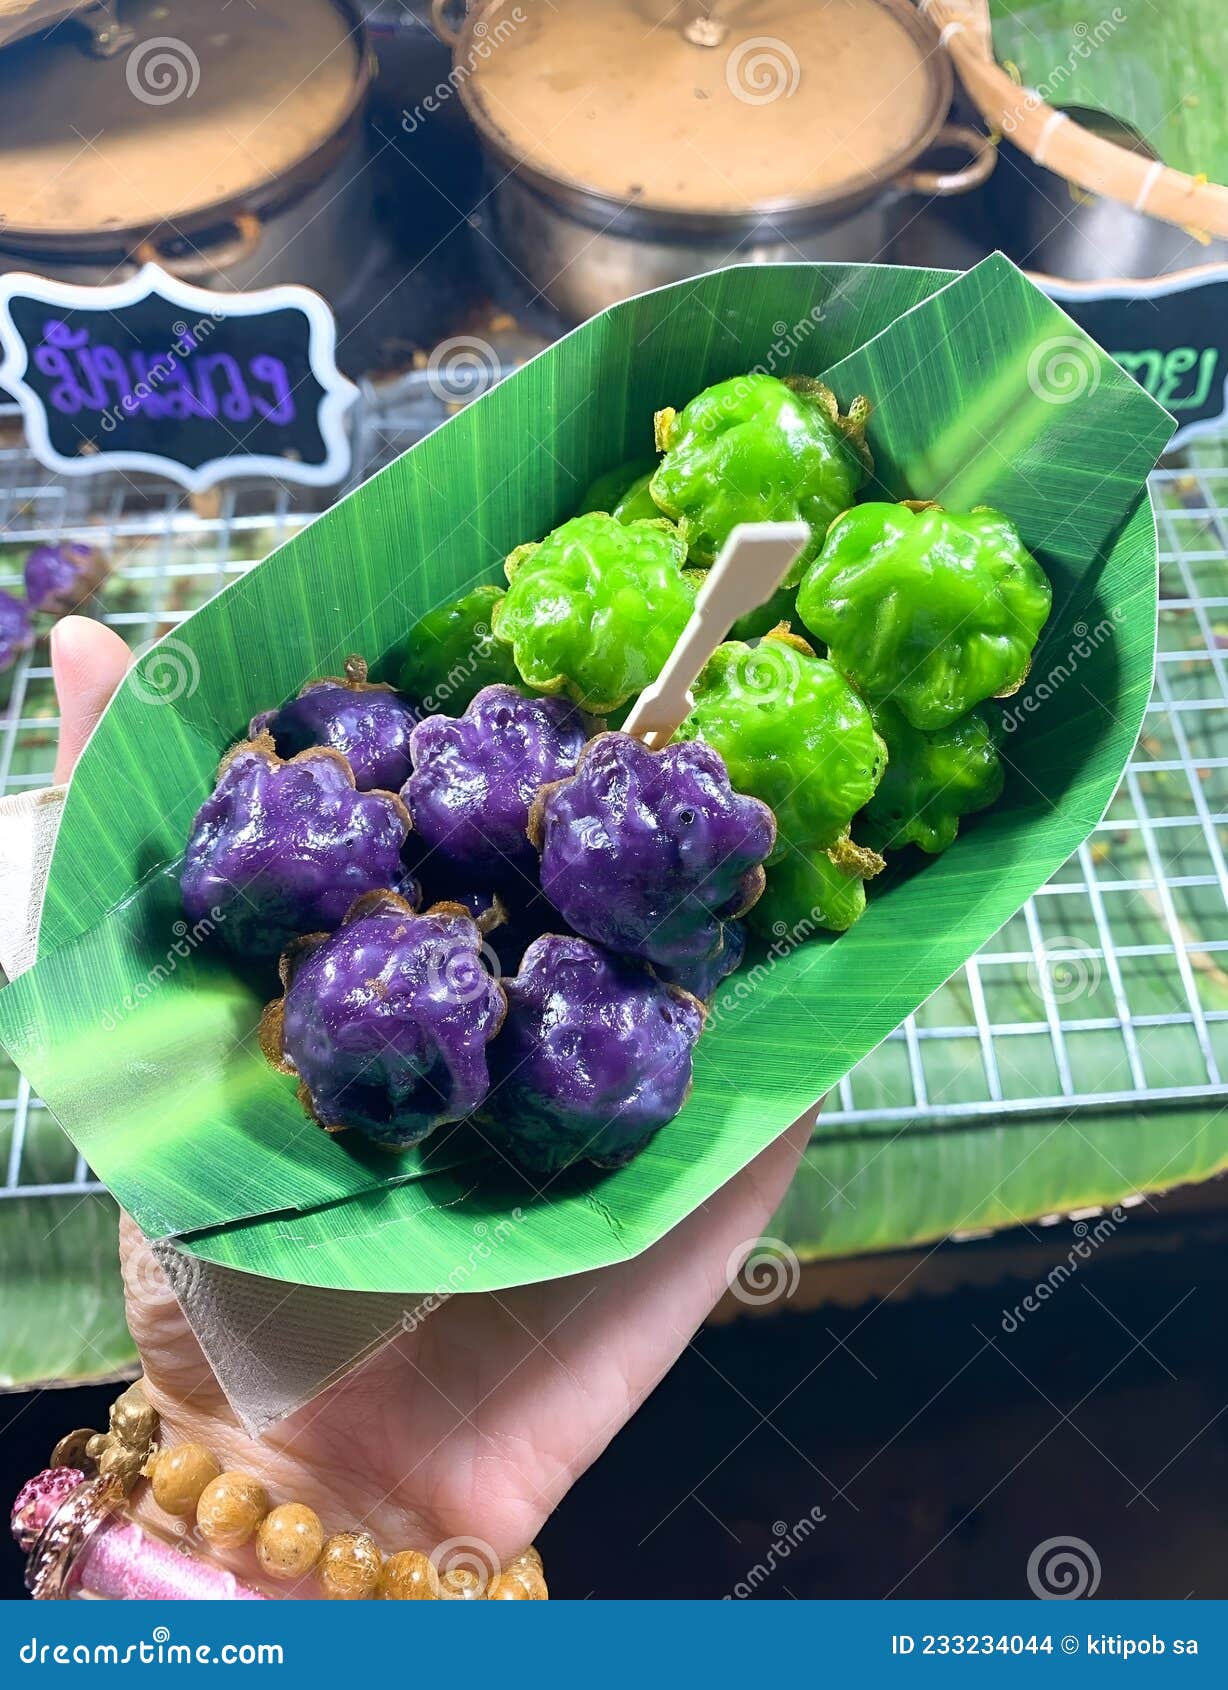 泰國飲食的獨特味蕾體驗 | 夏小強世界 xiaxiaoqiang.net